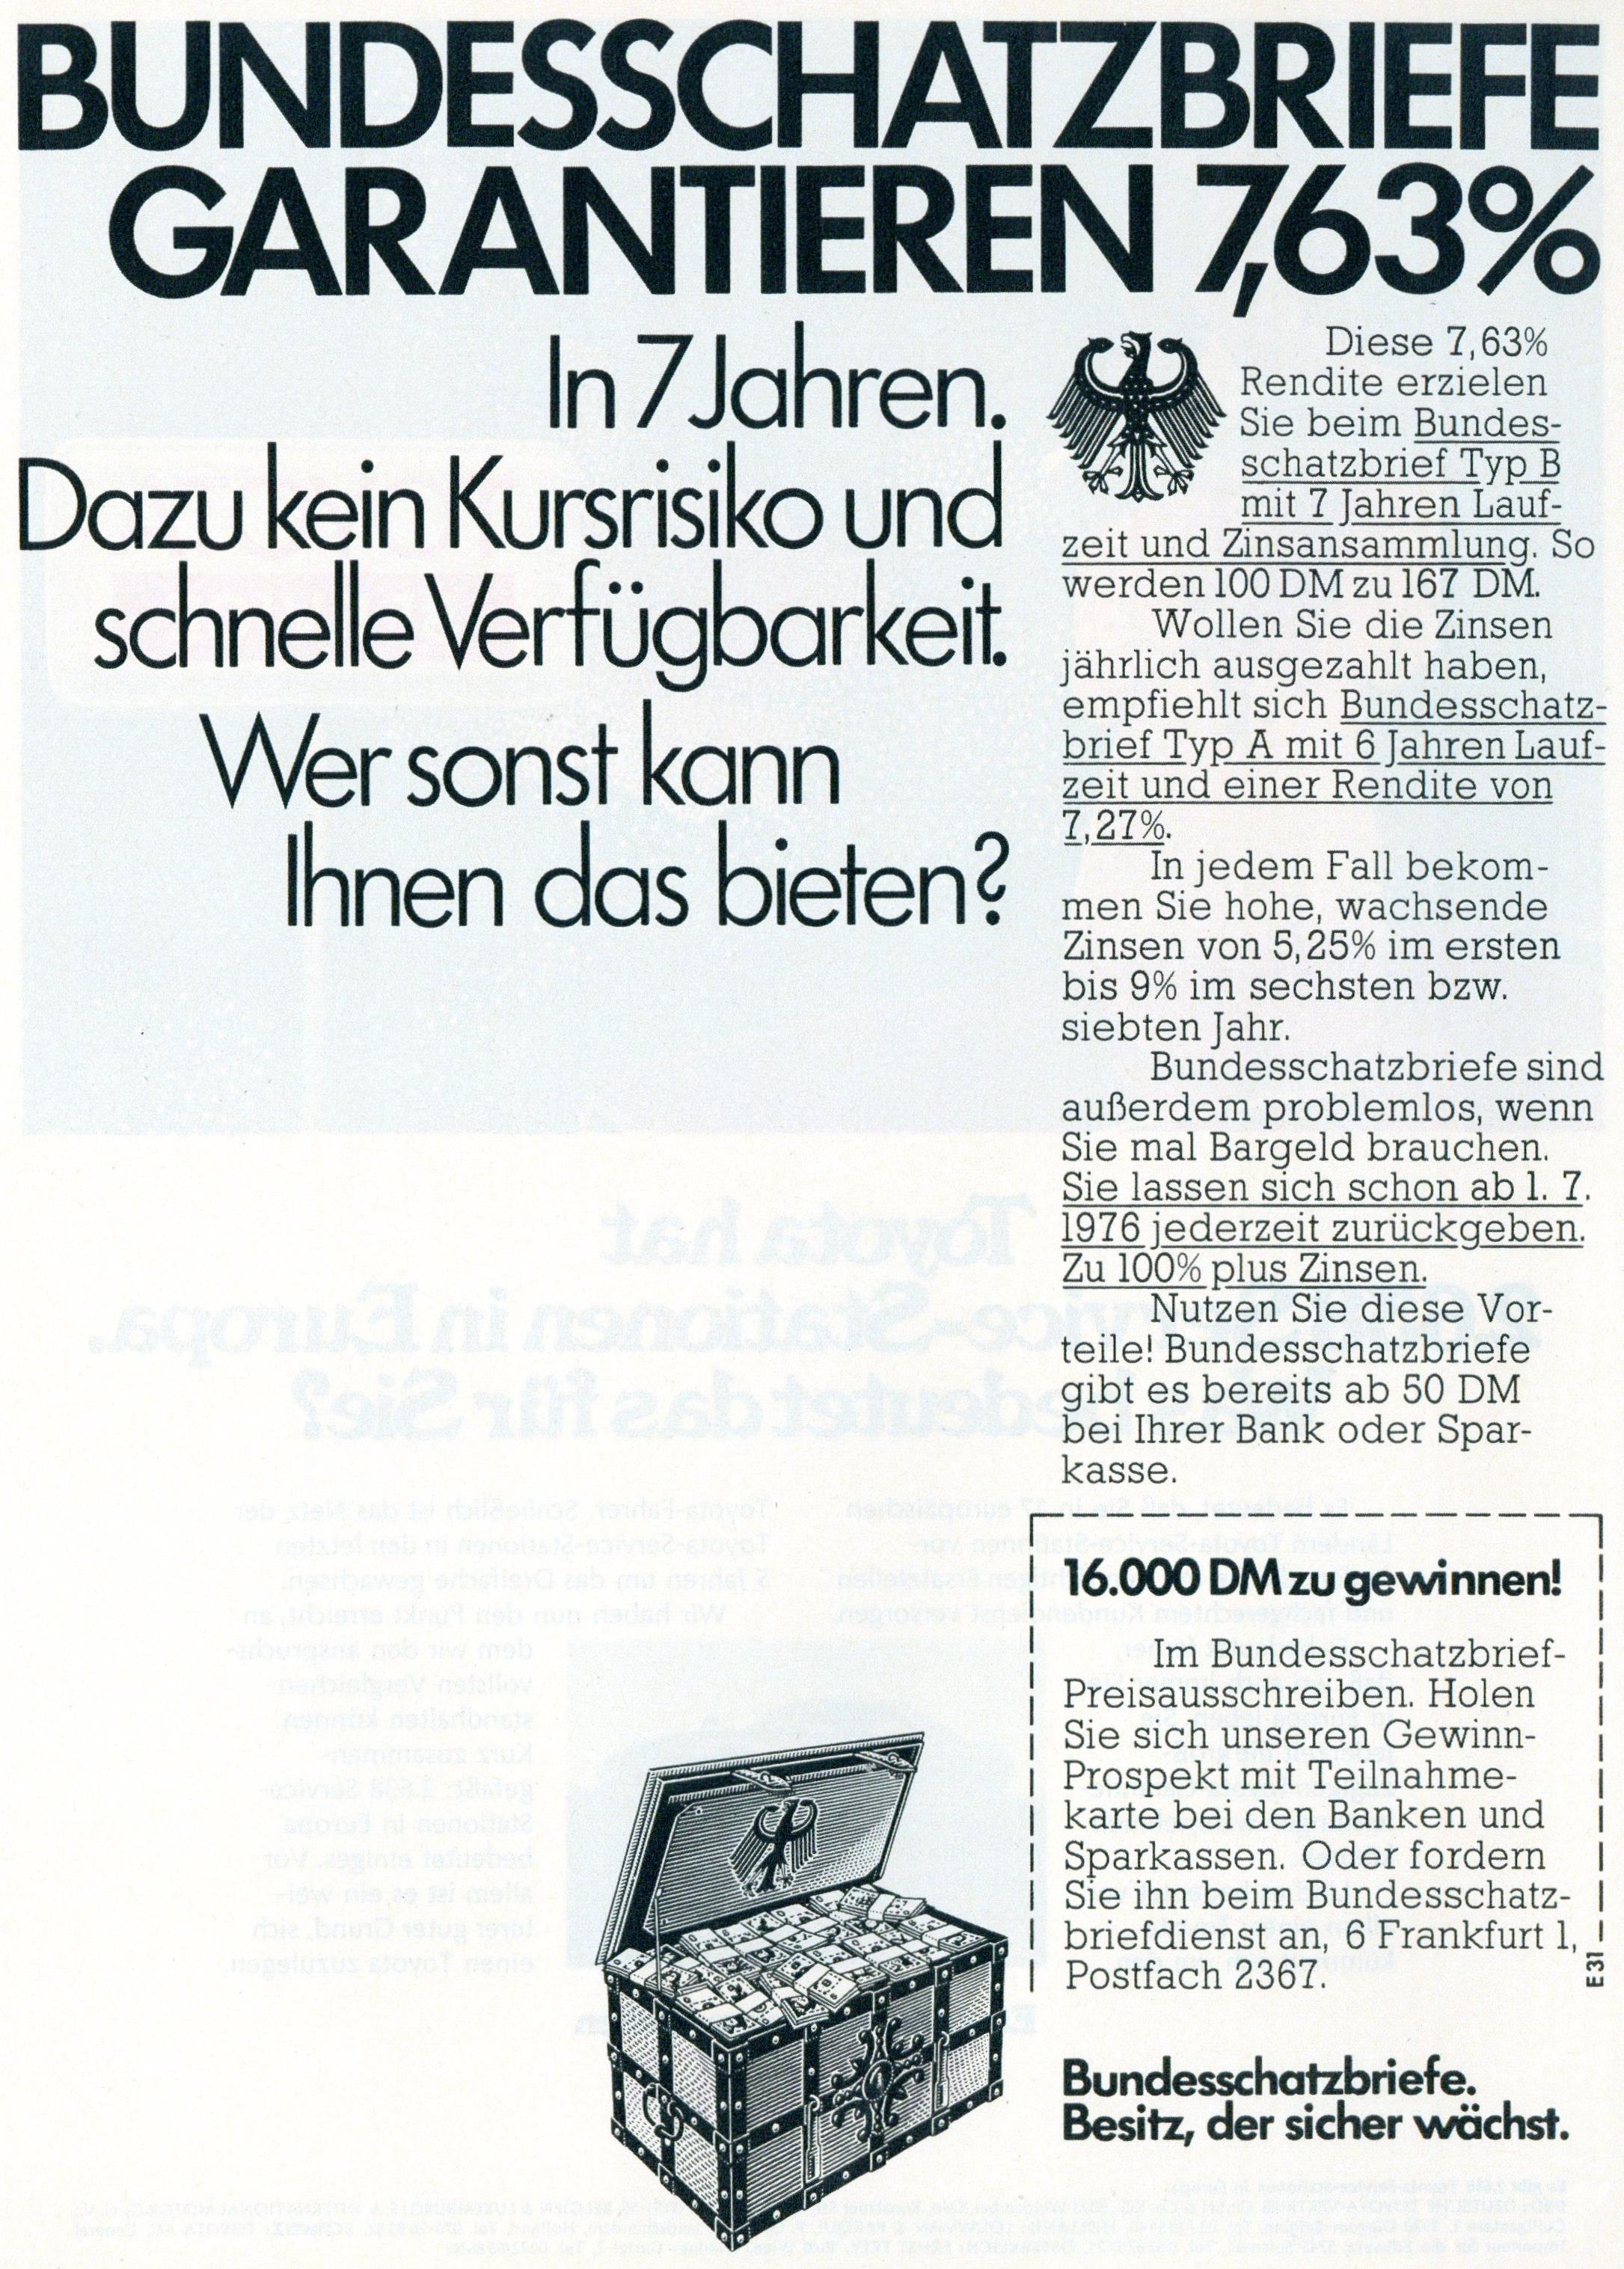 Bundesschatzbriefe 1975 0.jpg